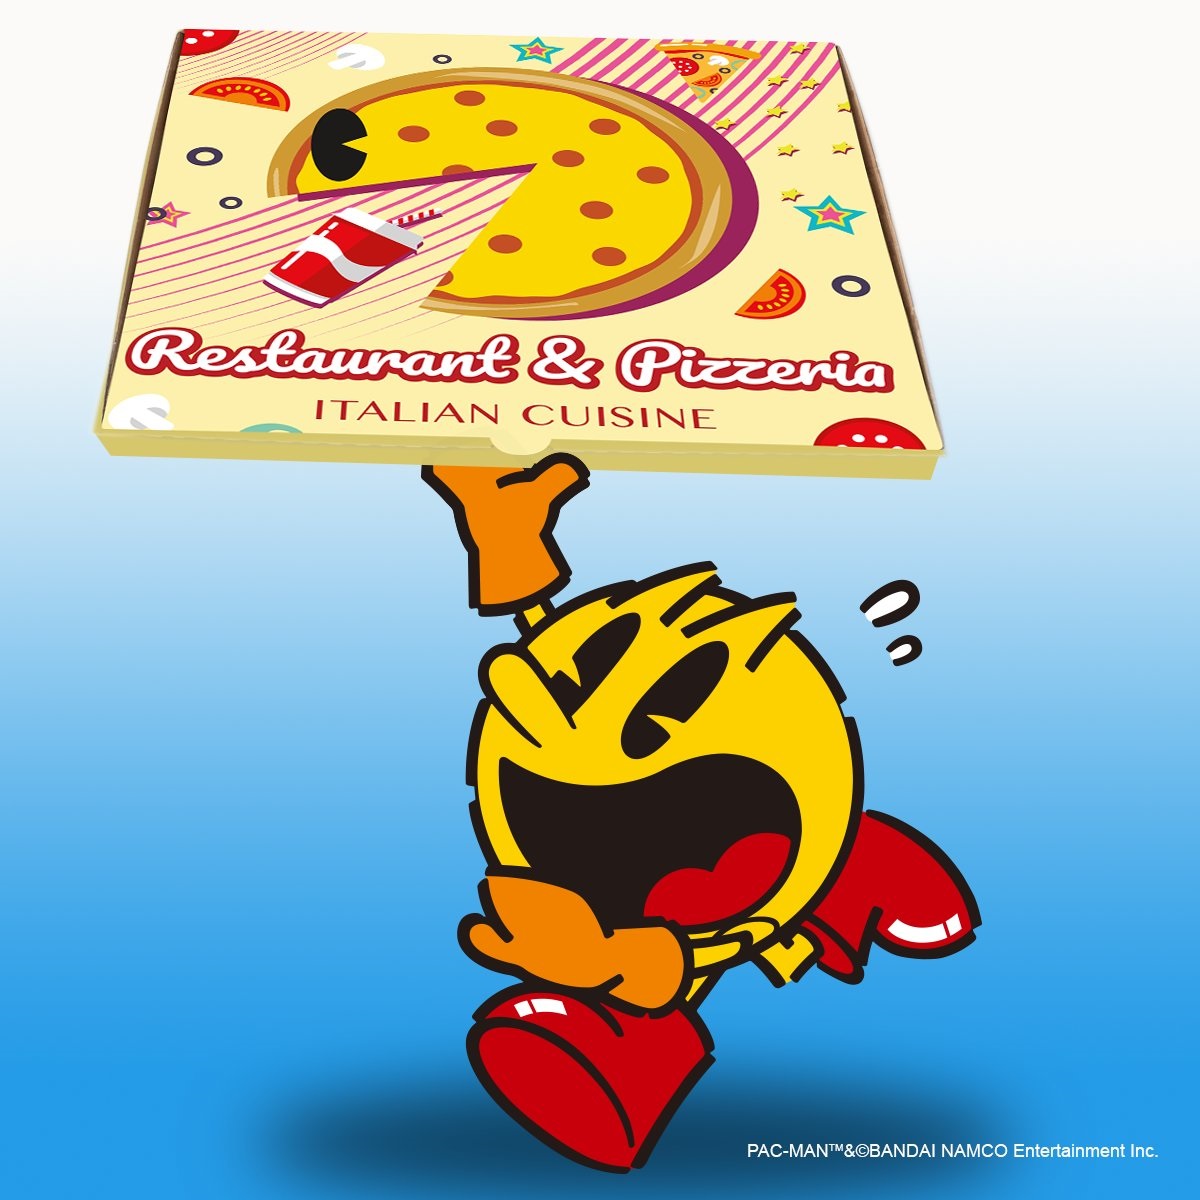 据游戏设计人的解释，Pac-Man的形象来自批萨。-图片摘自Pac-Man推特-